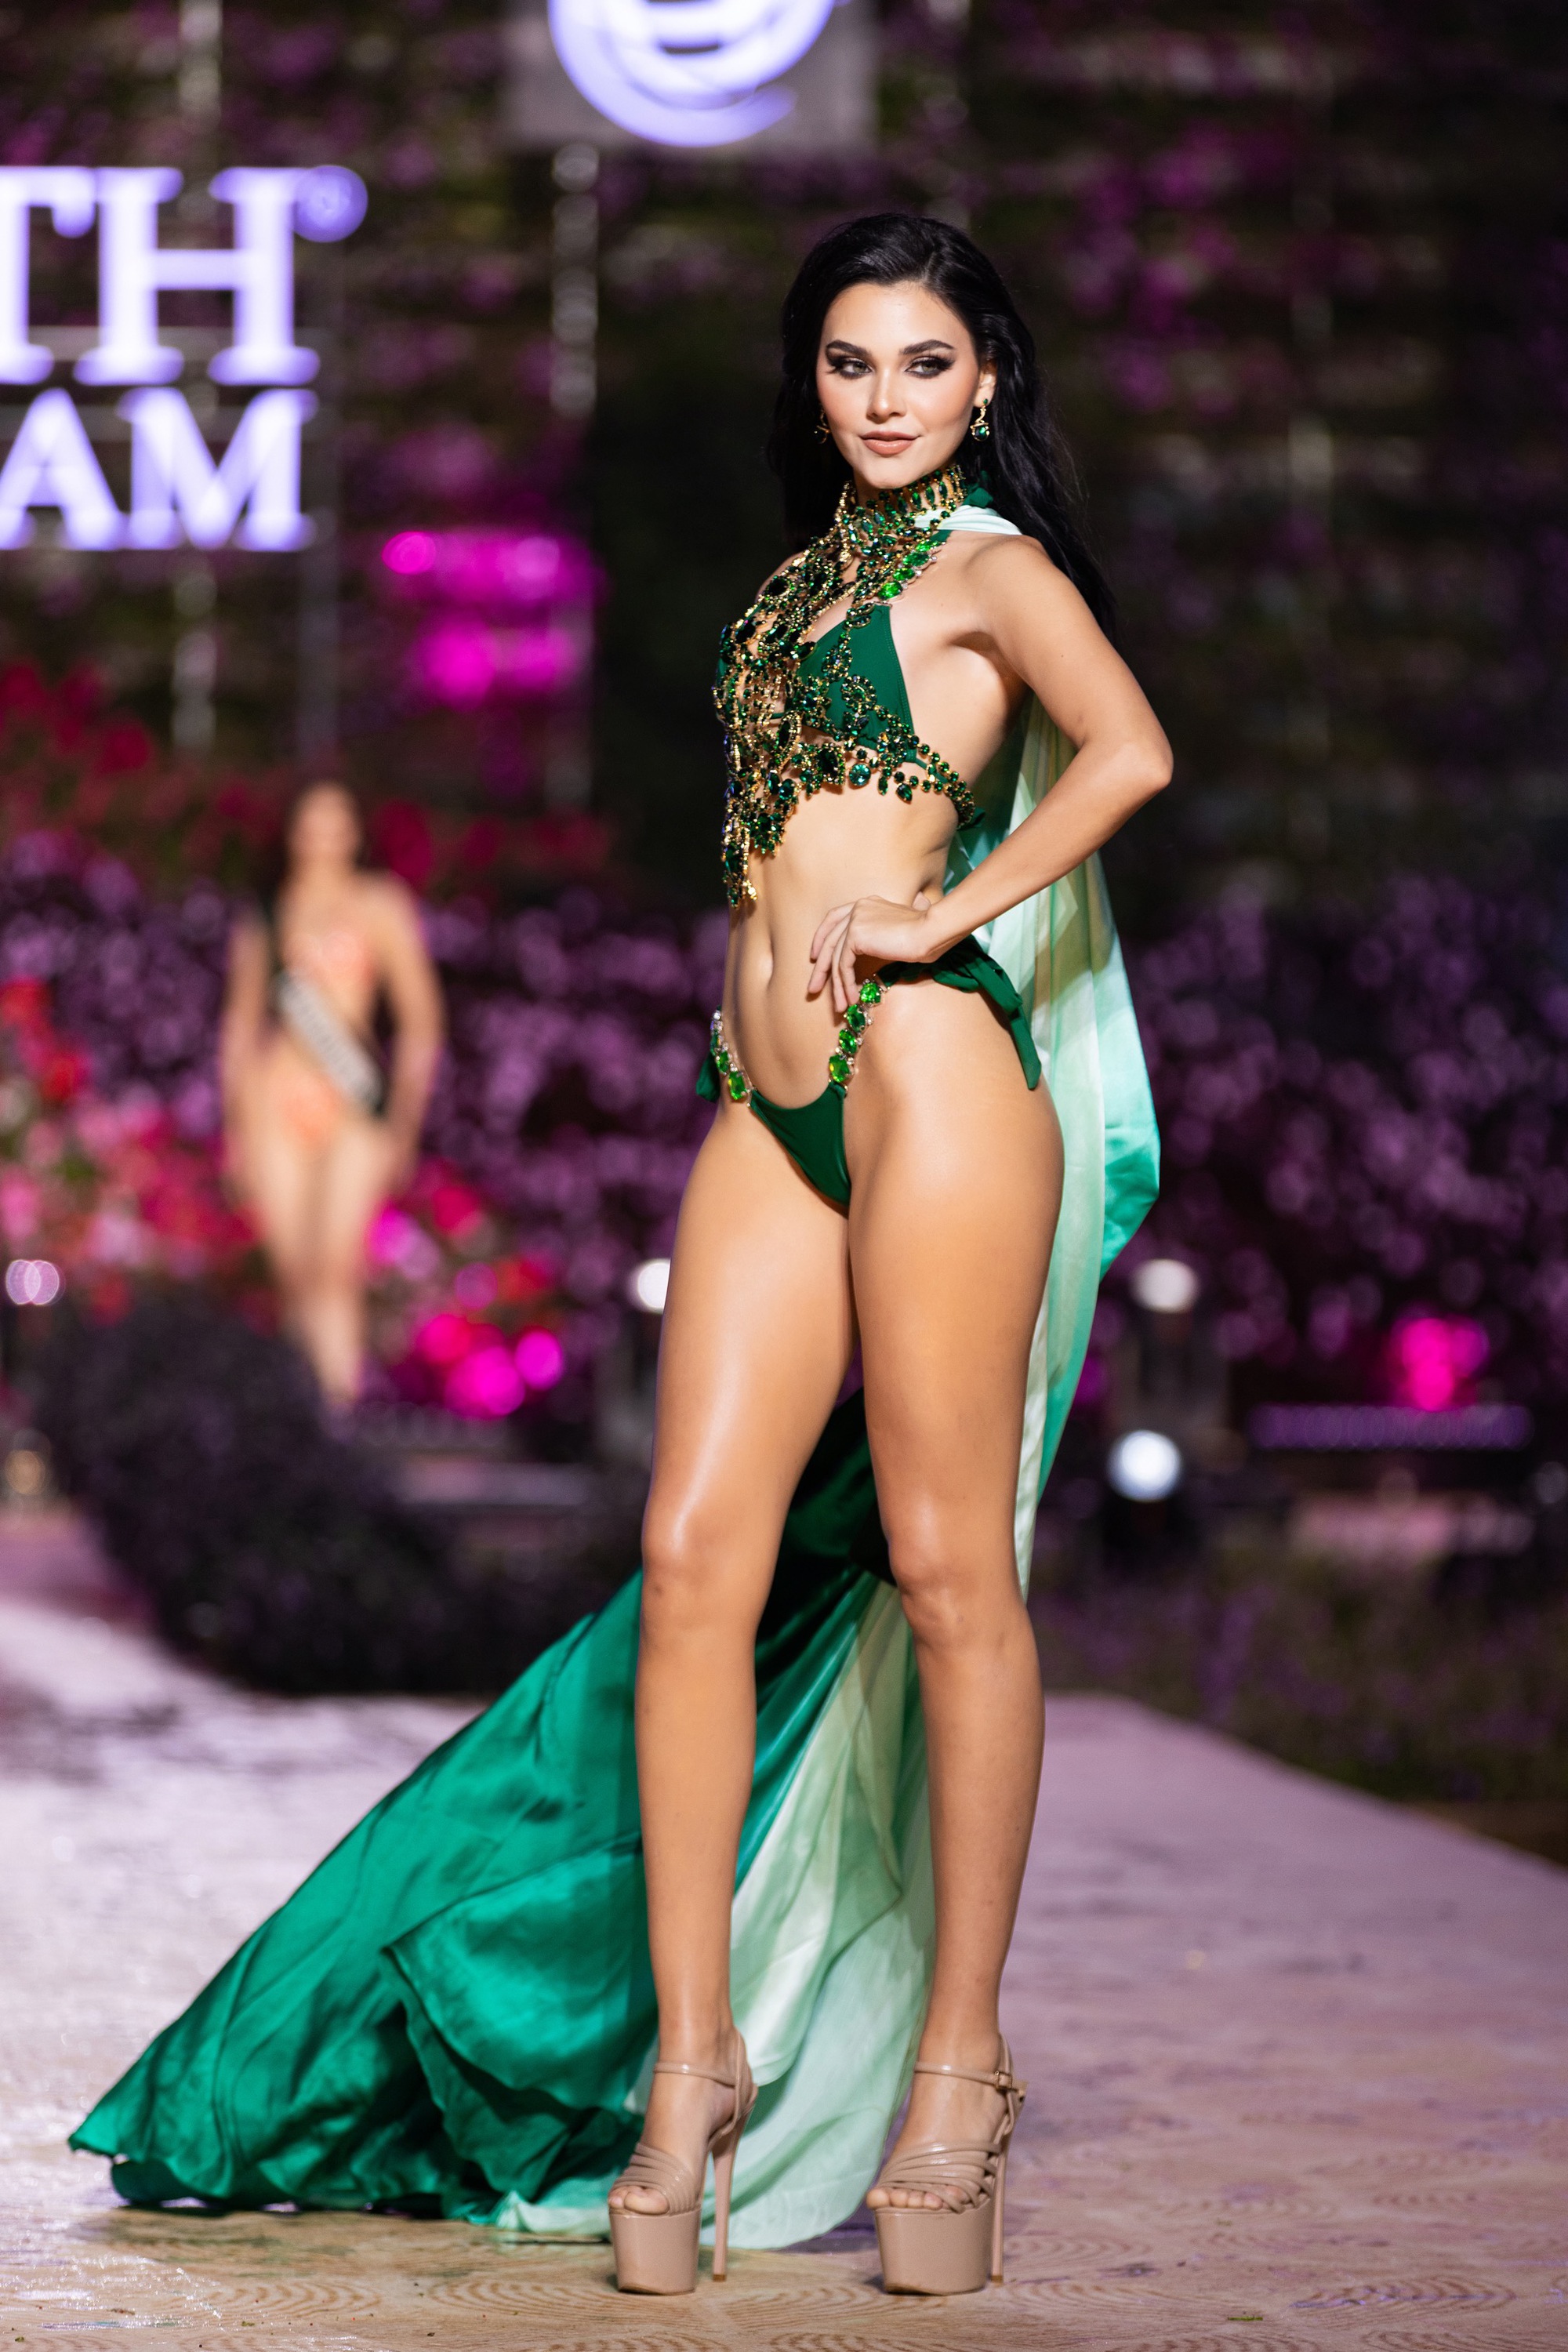 Dàn người đẹp Miss Earth 2023 khoe dáng nóng bỏng với bikini dưới trời lạnh 15 độ - Ảnh 8.